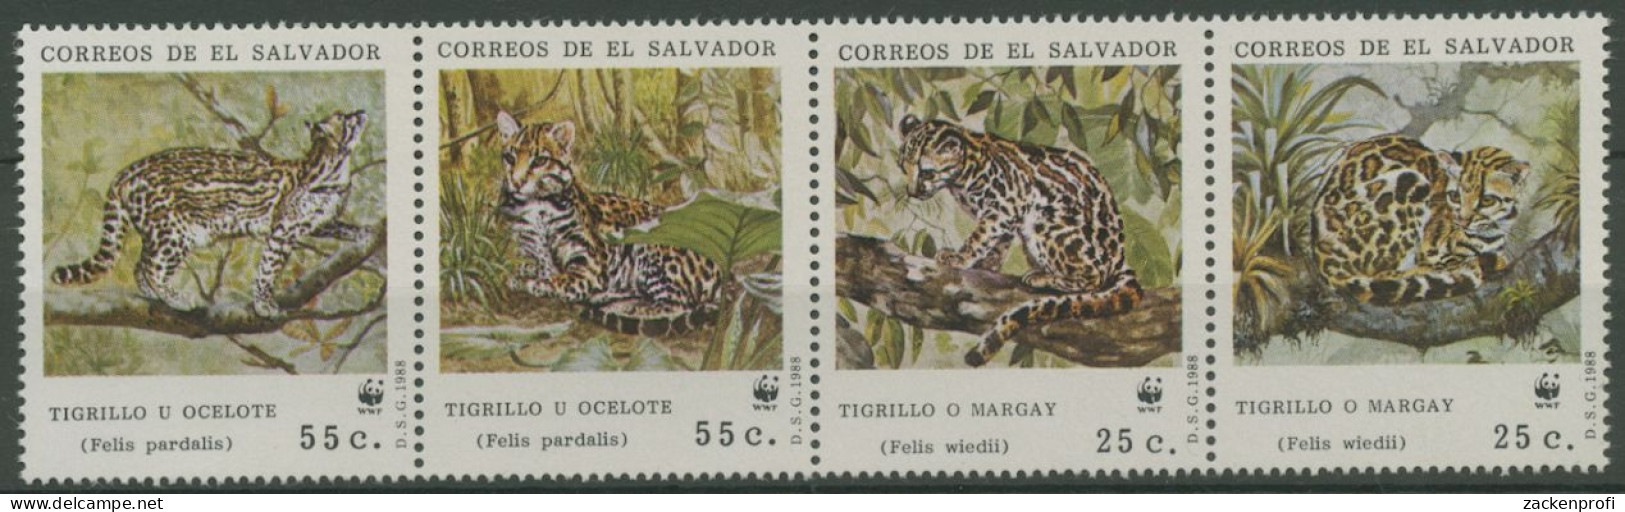 El Salvador 1988 WWF Naturschutz Katzen Ozelot 1734/37 ZD Postfrisch (C13023) - Salvador